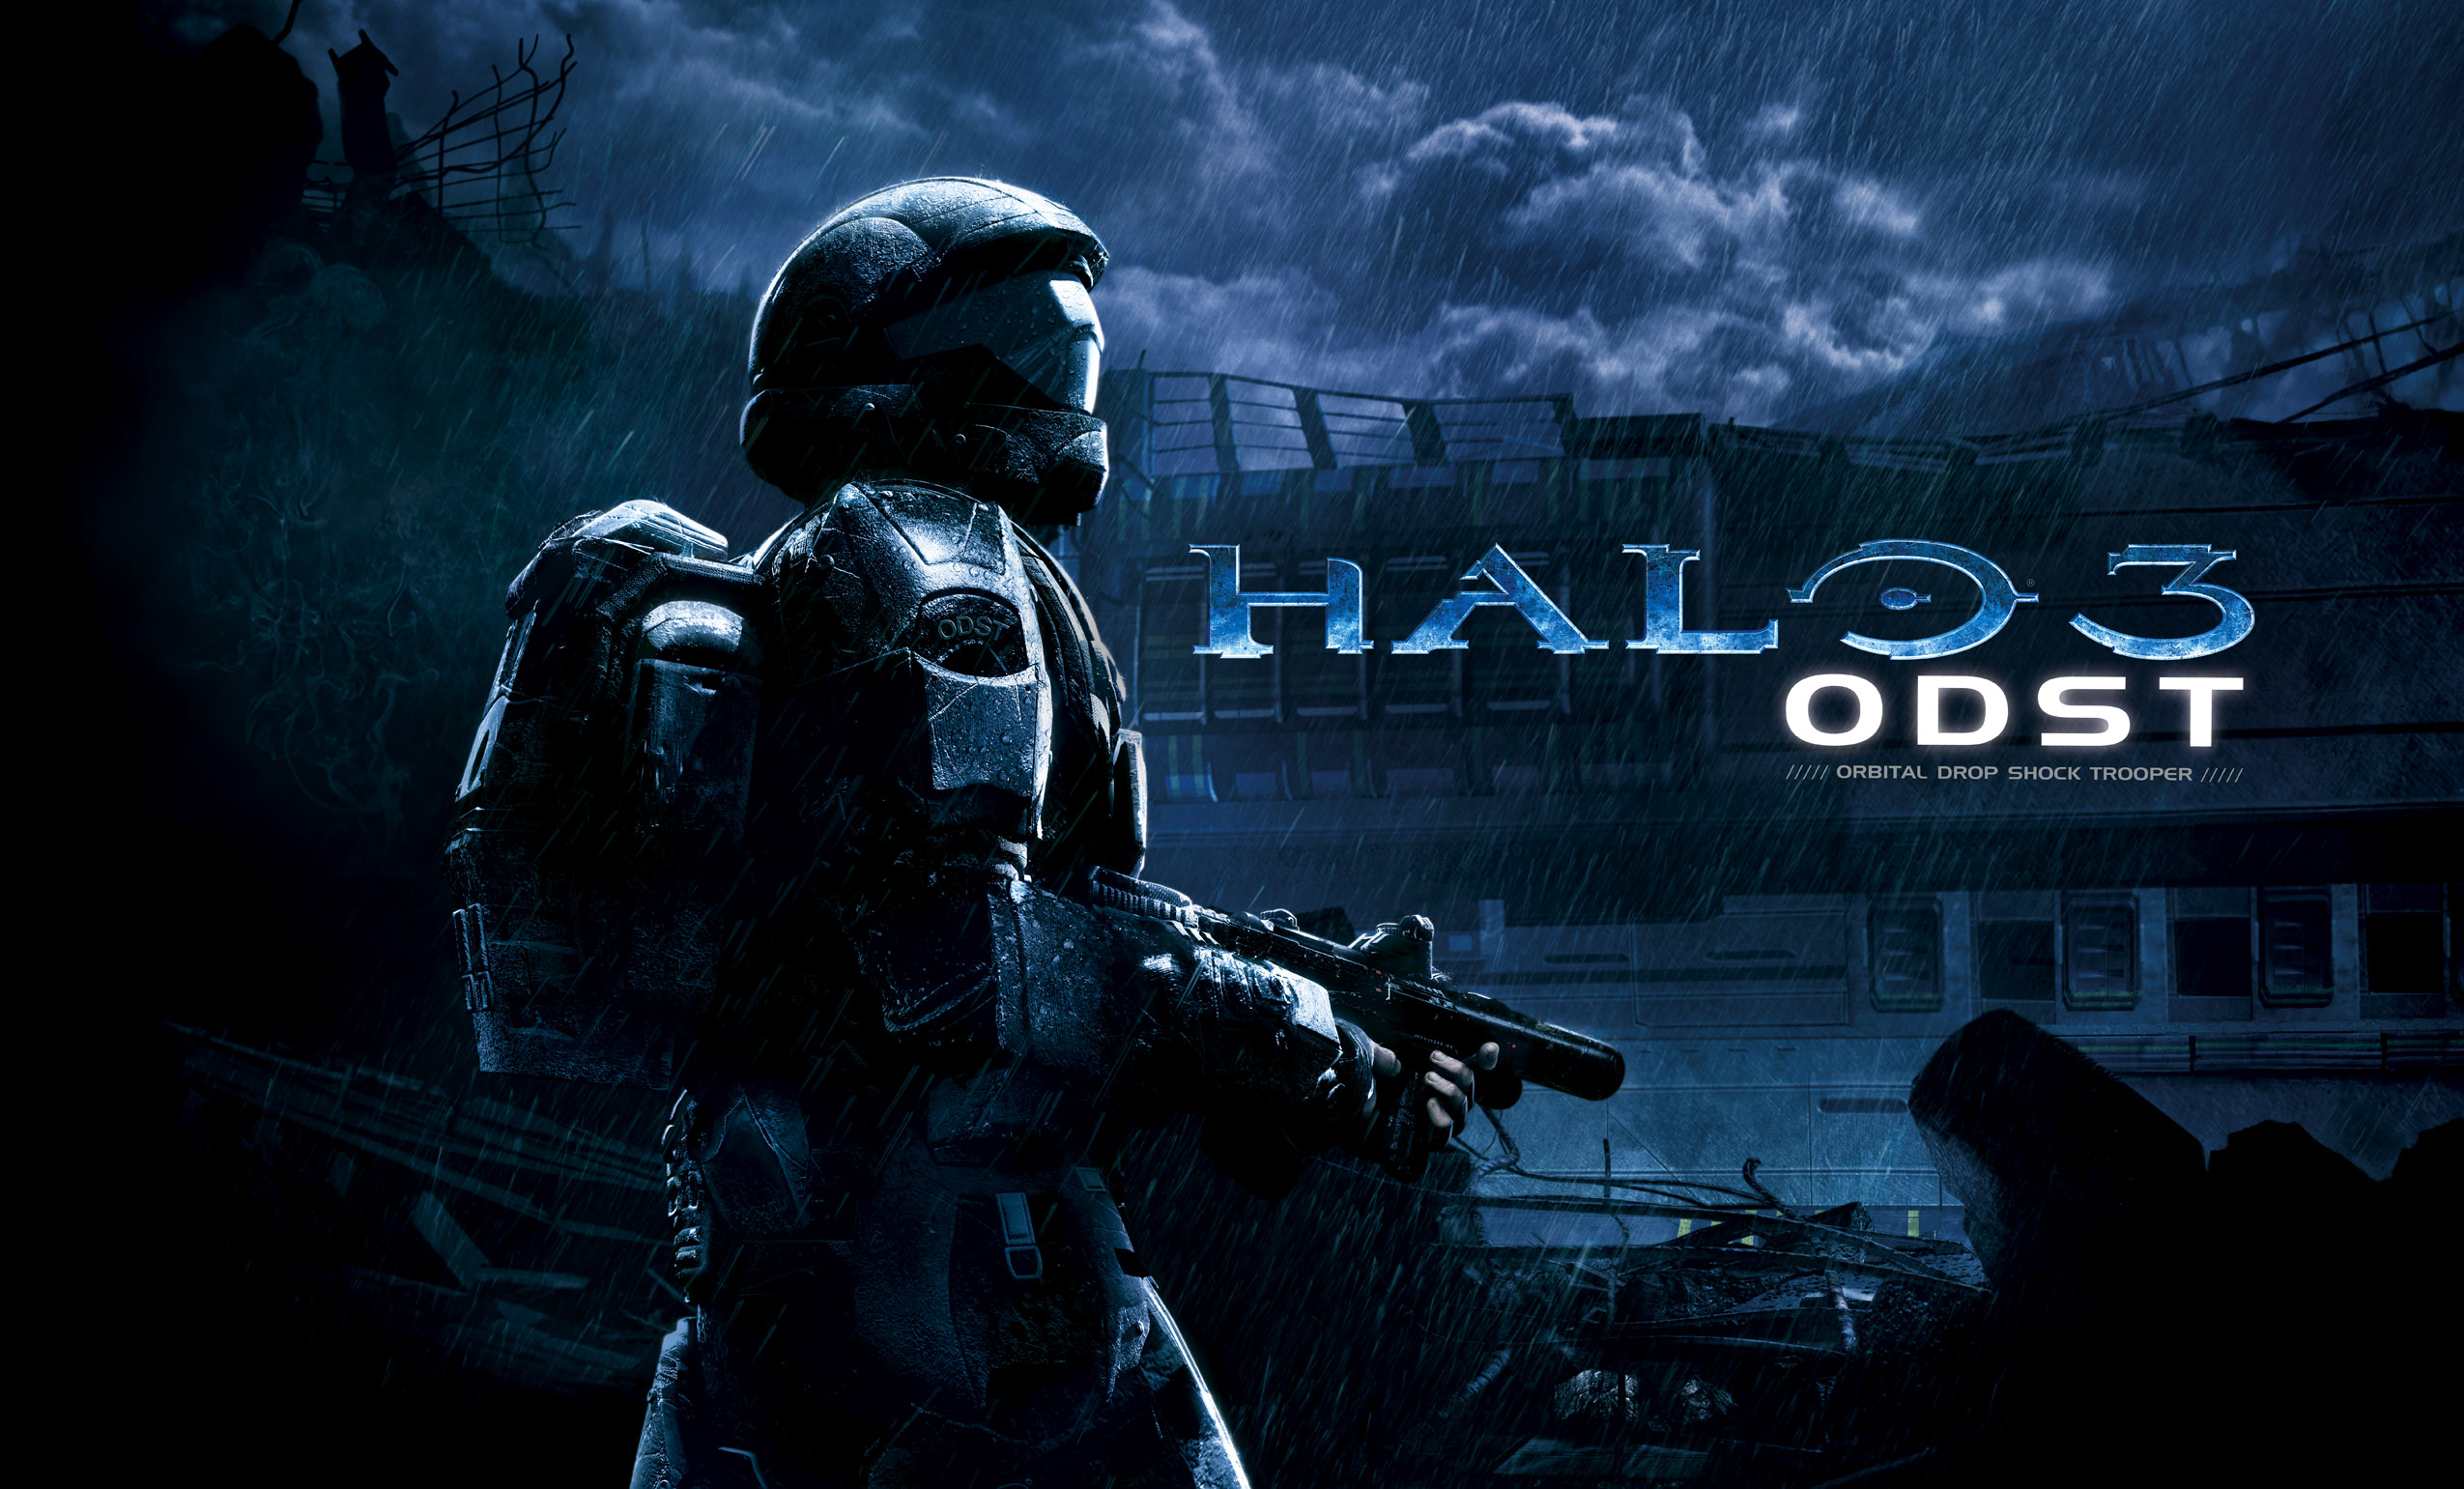 Melhores papéis de parede de Halo 3: Odst para tela do telefone